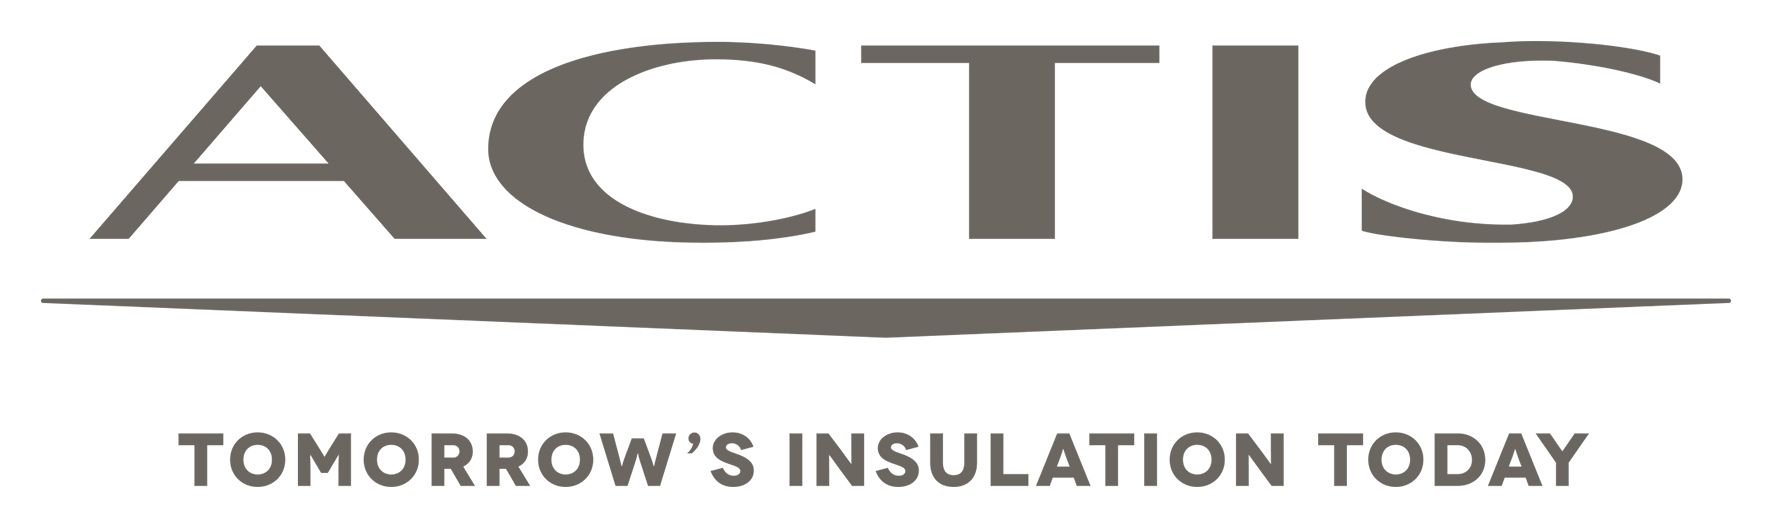 Actis Insulation Ltd